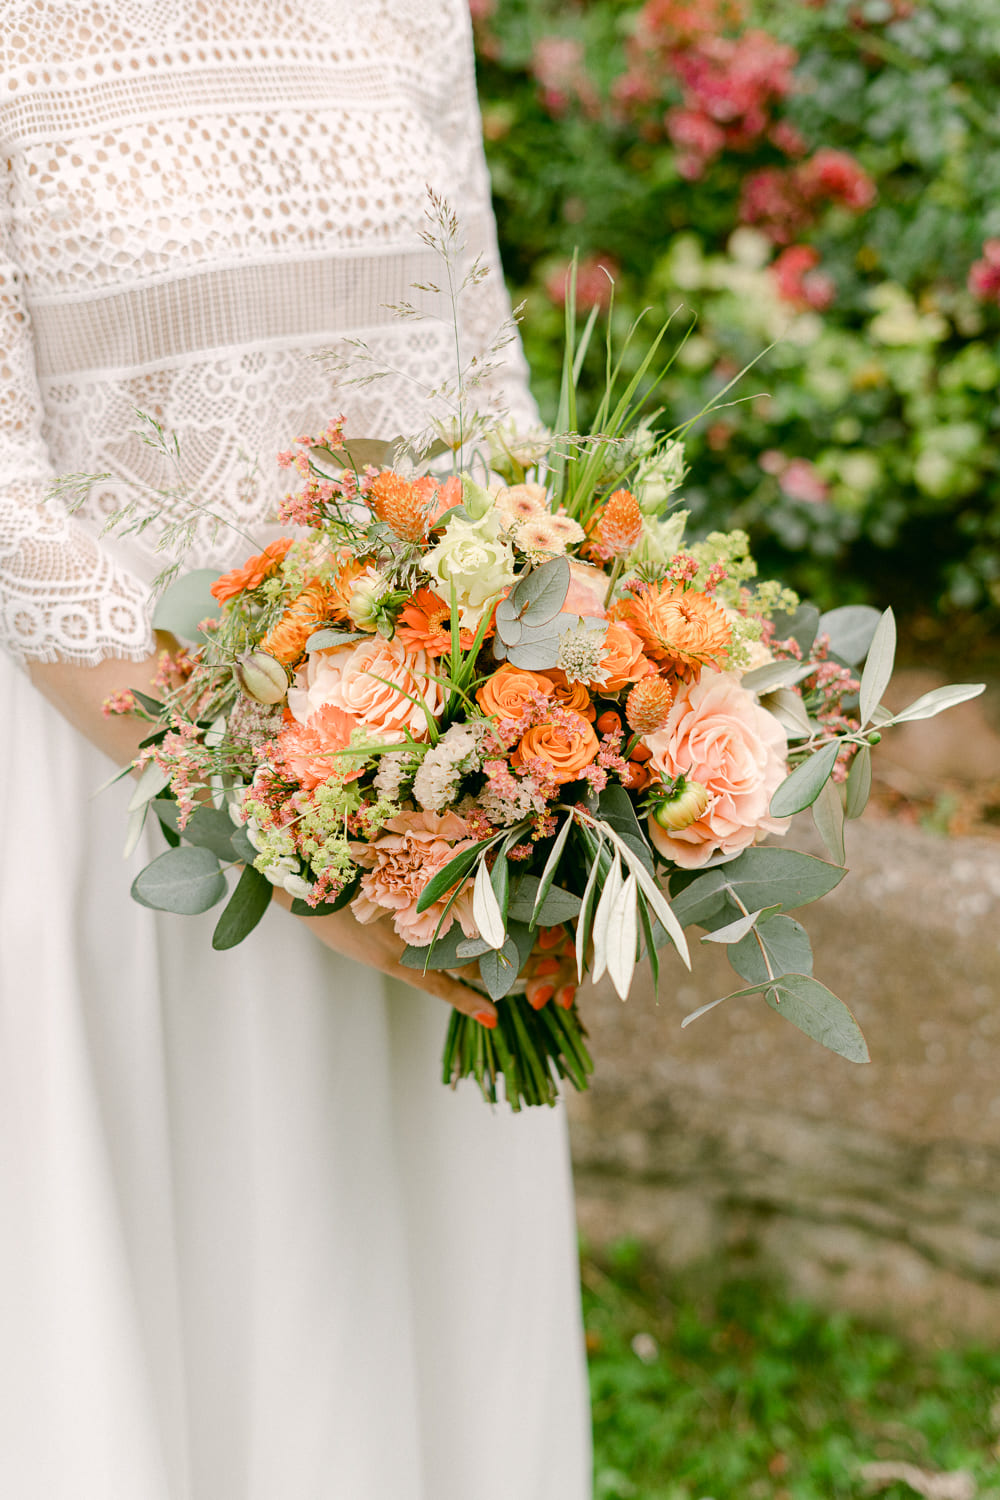 Detail photo bride with bridal bouquet